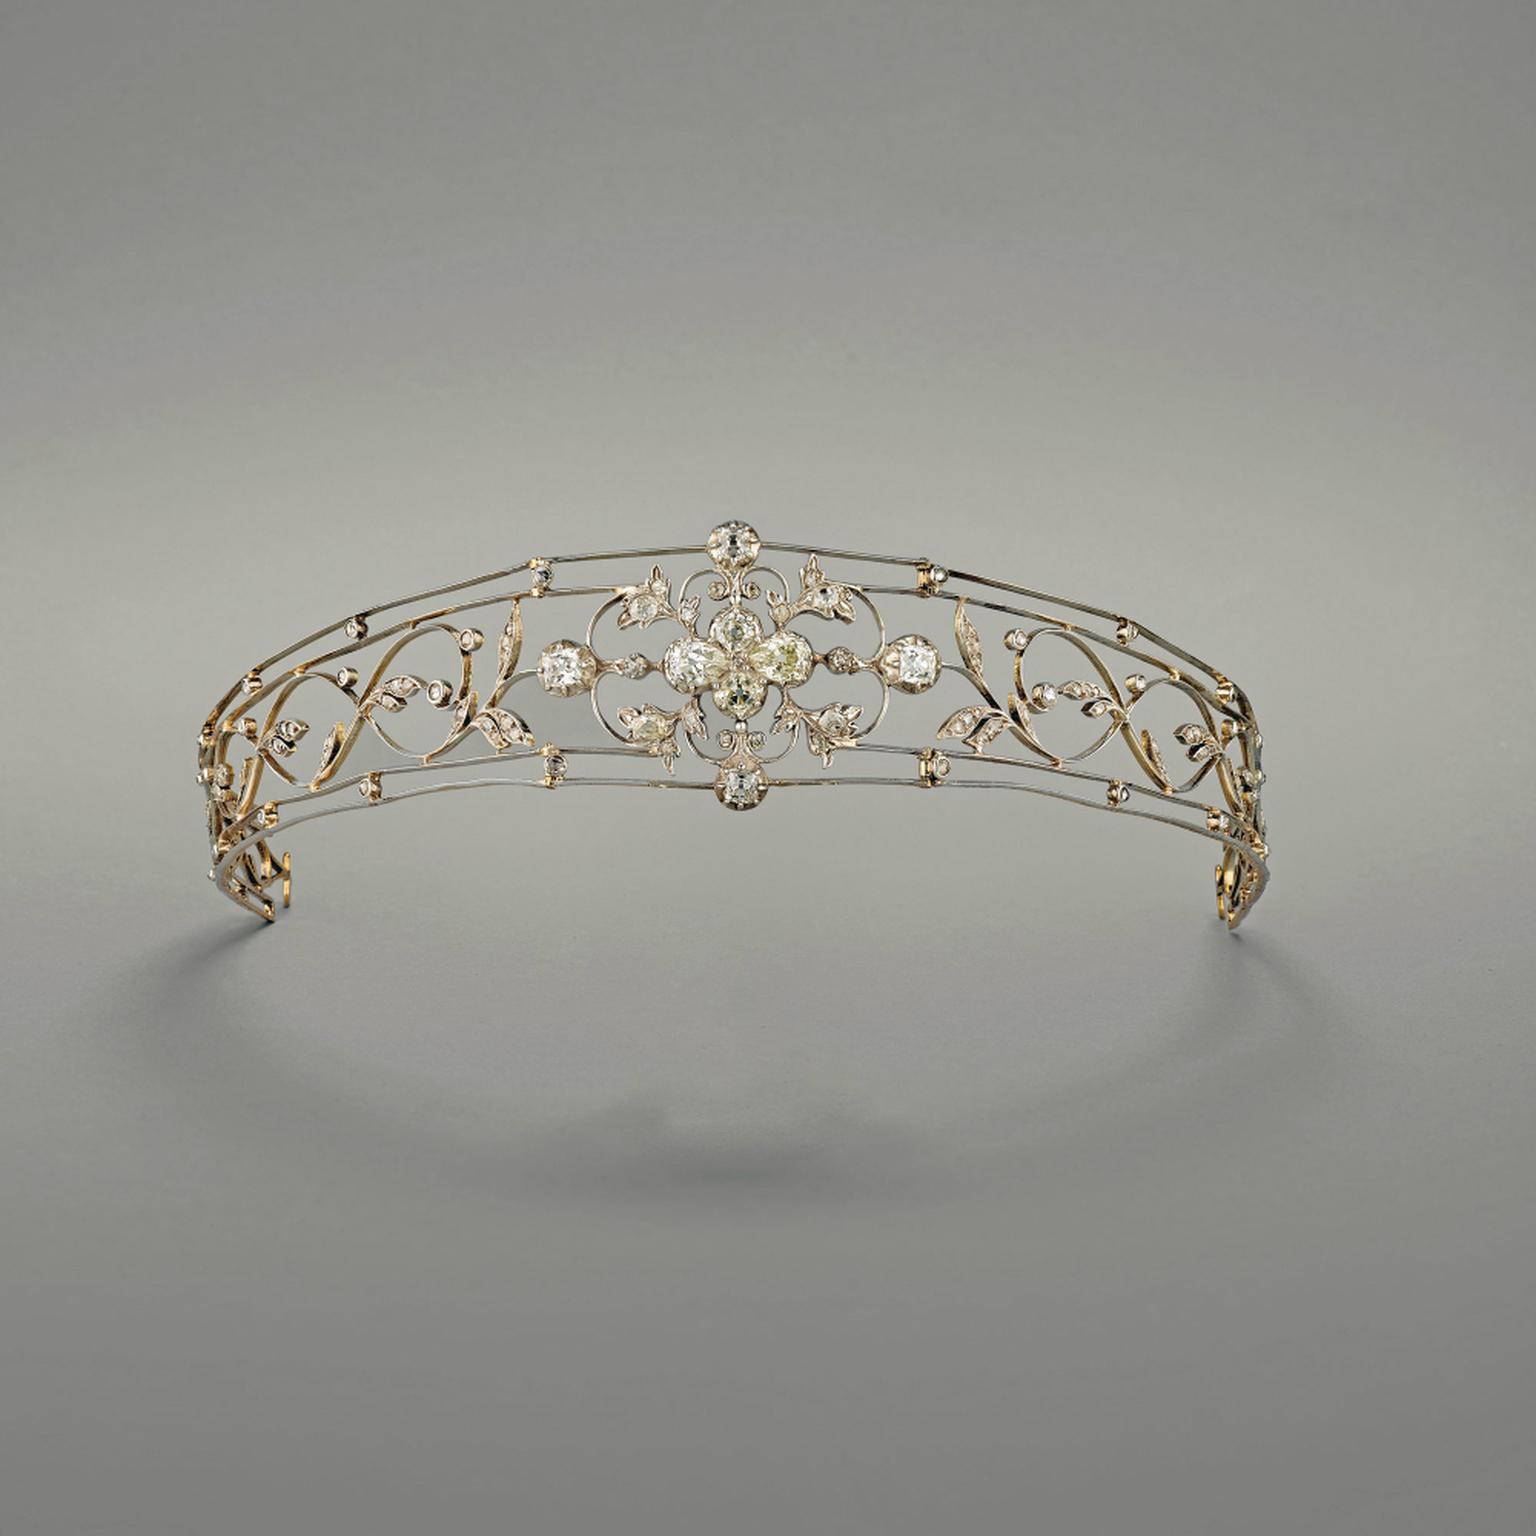 Chaumet Foilage bandeau tiara circa 1918